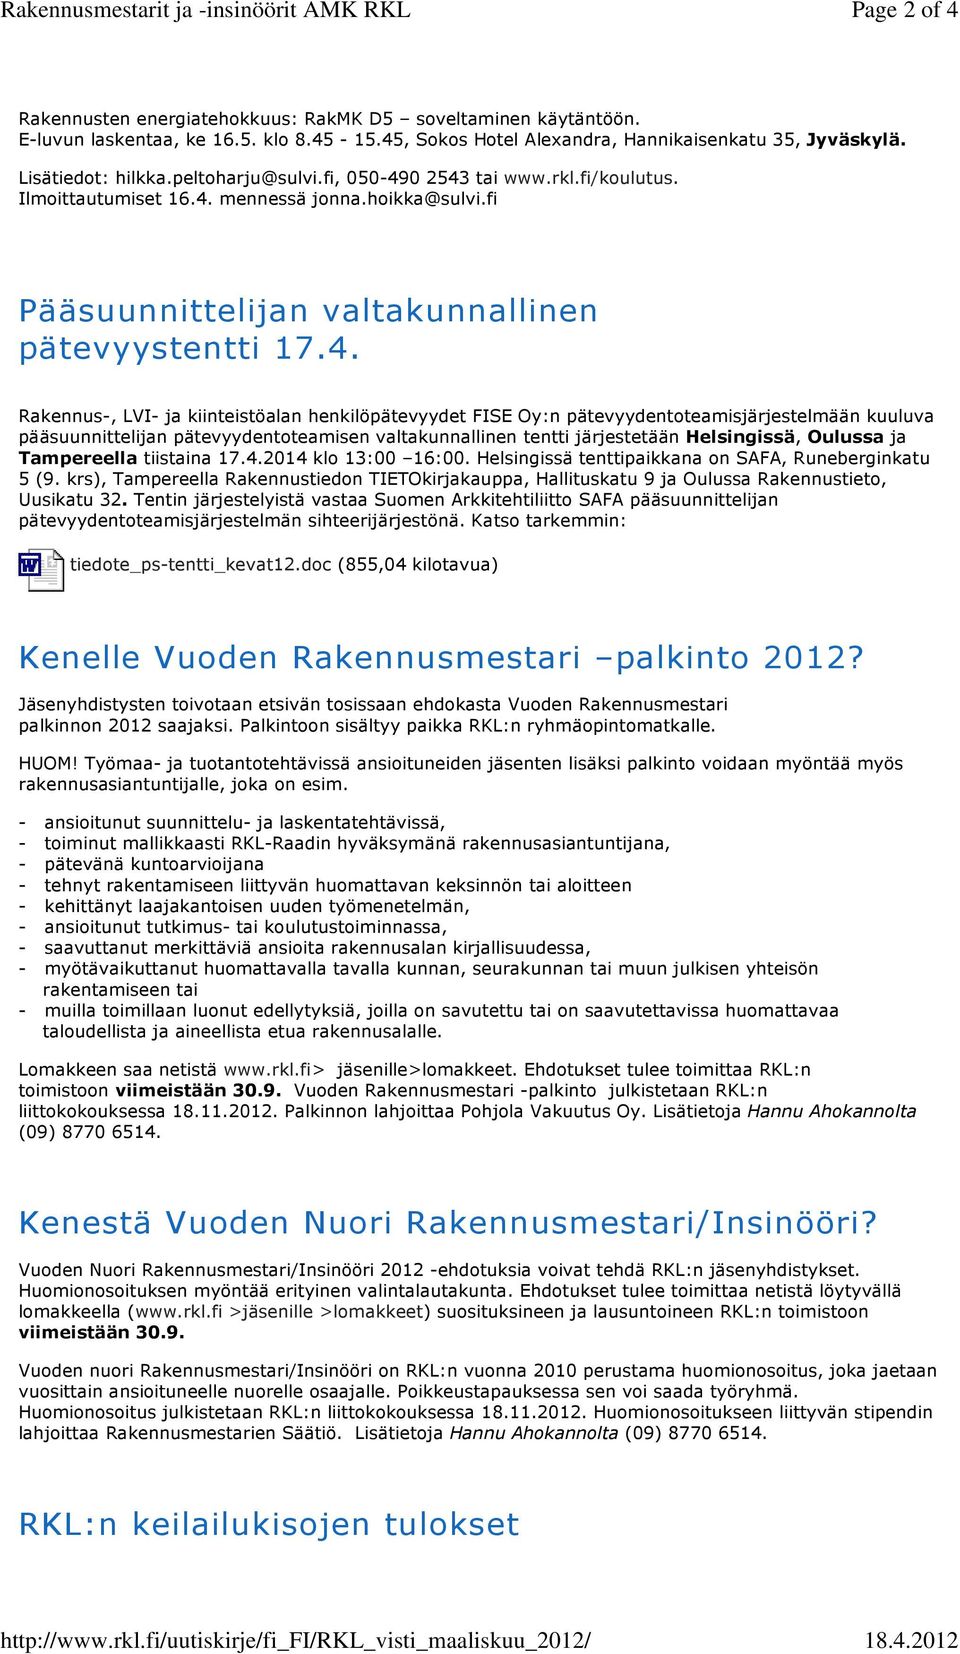 hoikka@sulvi.fi Pääsuunnittelijan valtakunnallinen pätevyystentti 17.4.